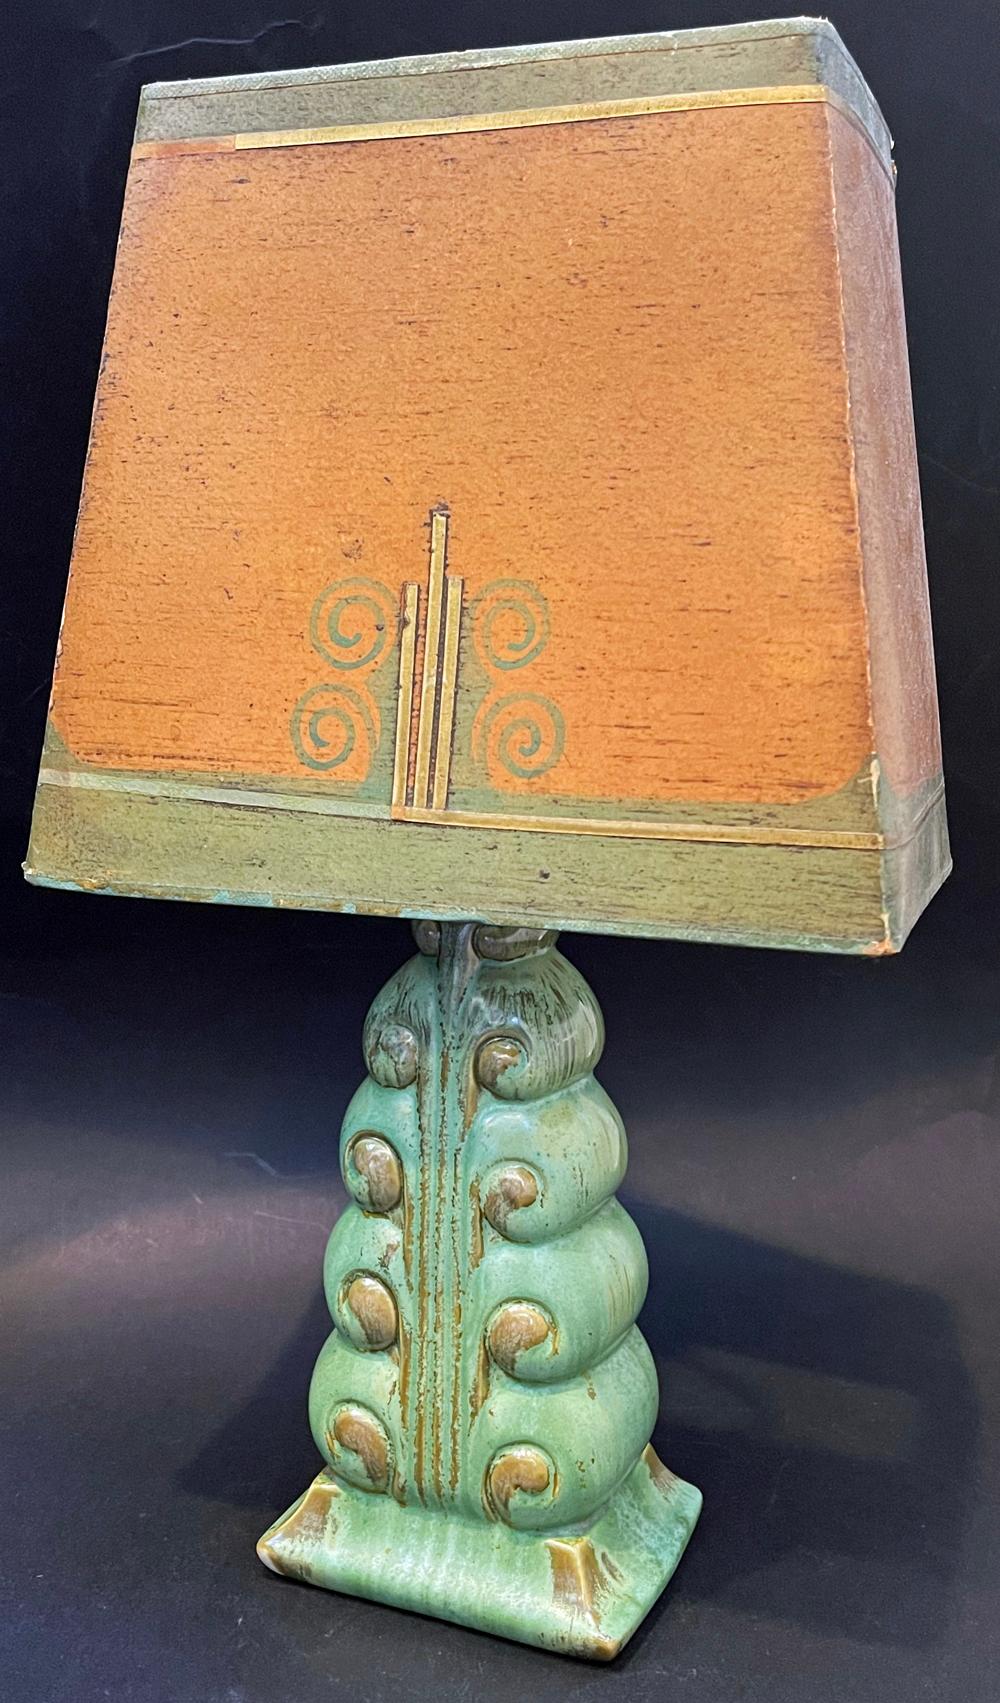 Extraordinaire par sa rareté et la finesse de son design, cette lampe de table émaillée vert et or du sculpteur Waylande Gregory a été fabriquée par la célèbre poterie Cowan, près de Cleveland, et comprend son abat-jour original en parchemin, fait à